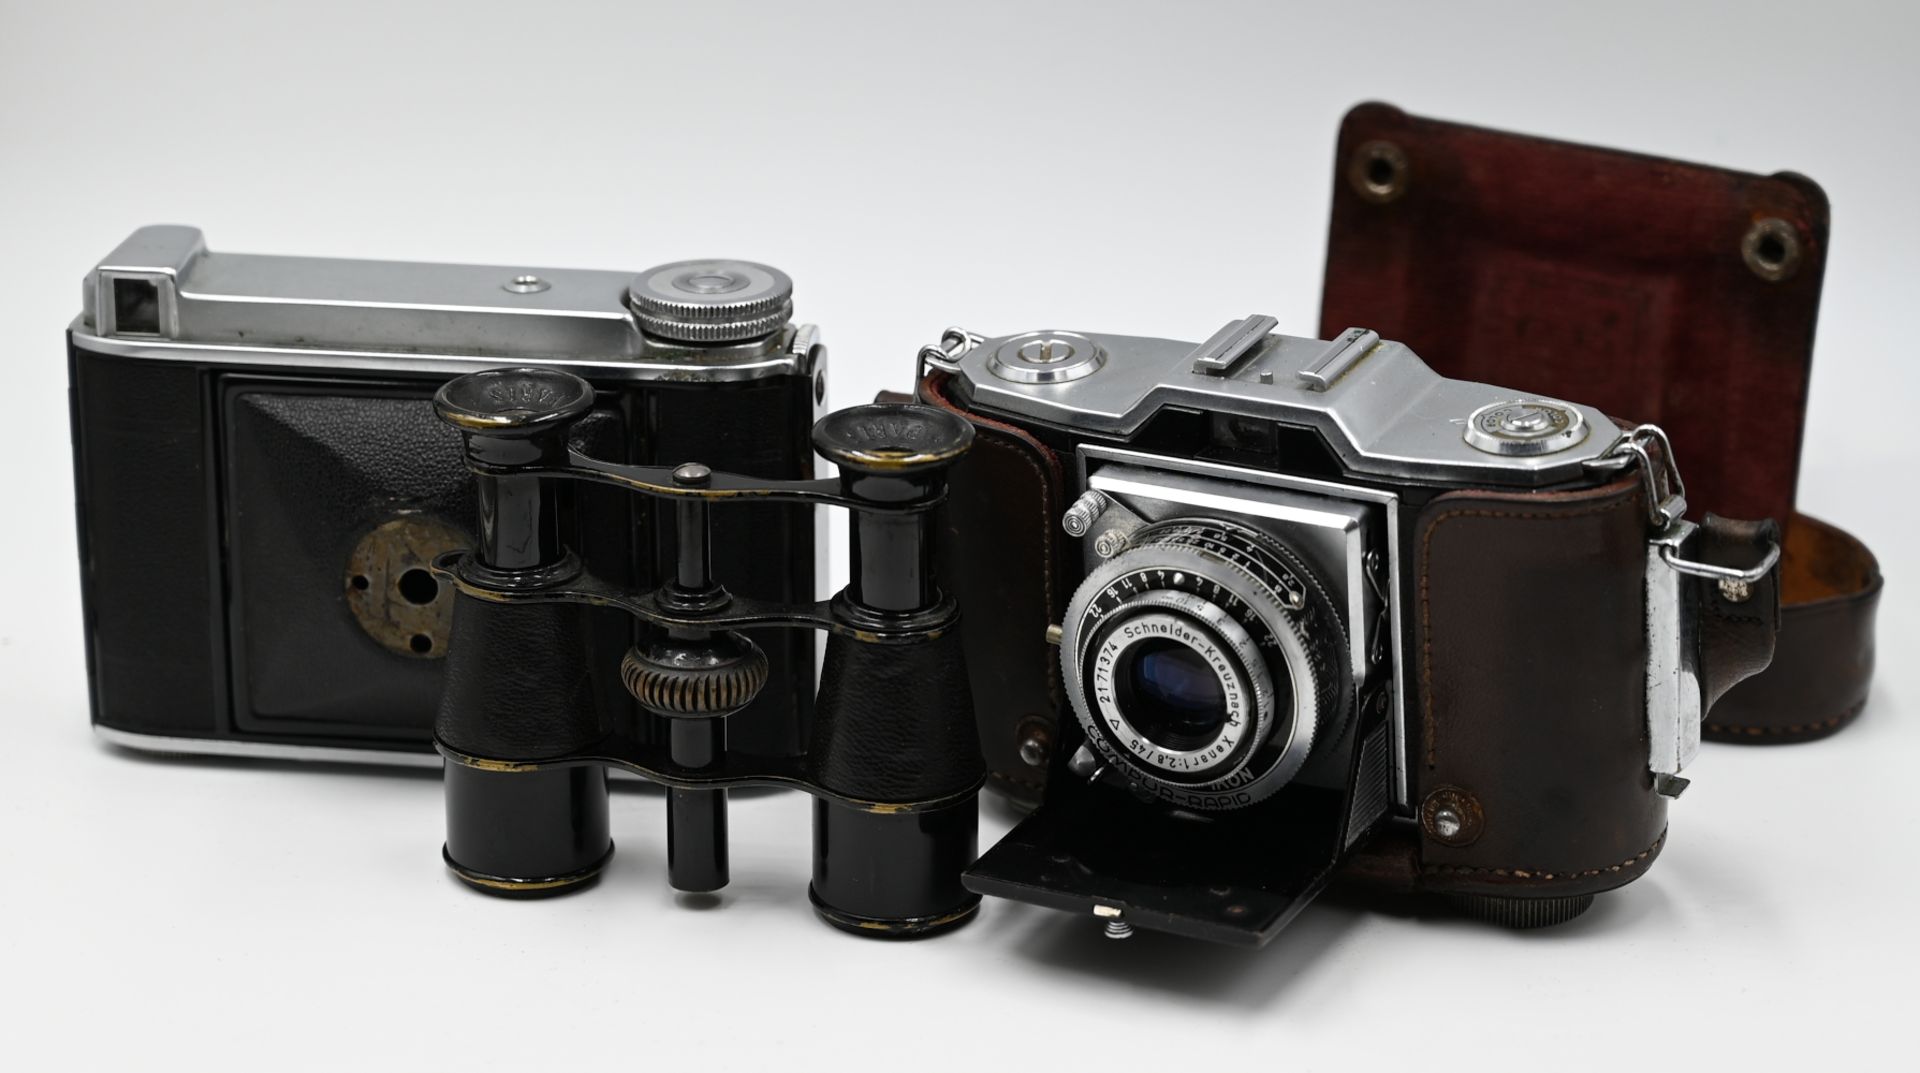 4 Fotoapparate: ZEISS IKON z.B. "S310", "Compur-Rapid", VOIGTLÄNDER "Bessa 46" sowie Ojektive und Fe